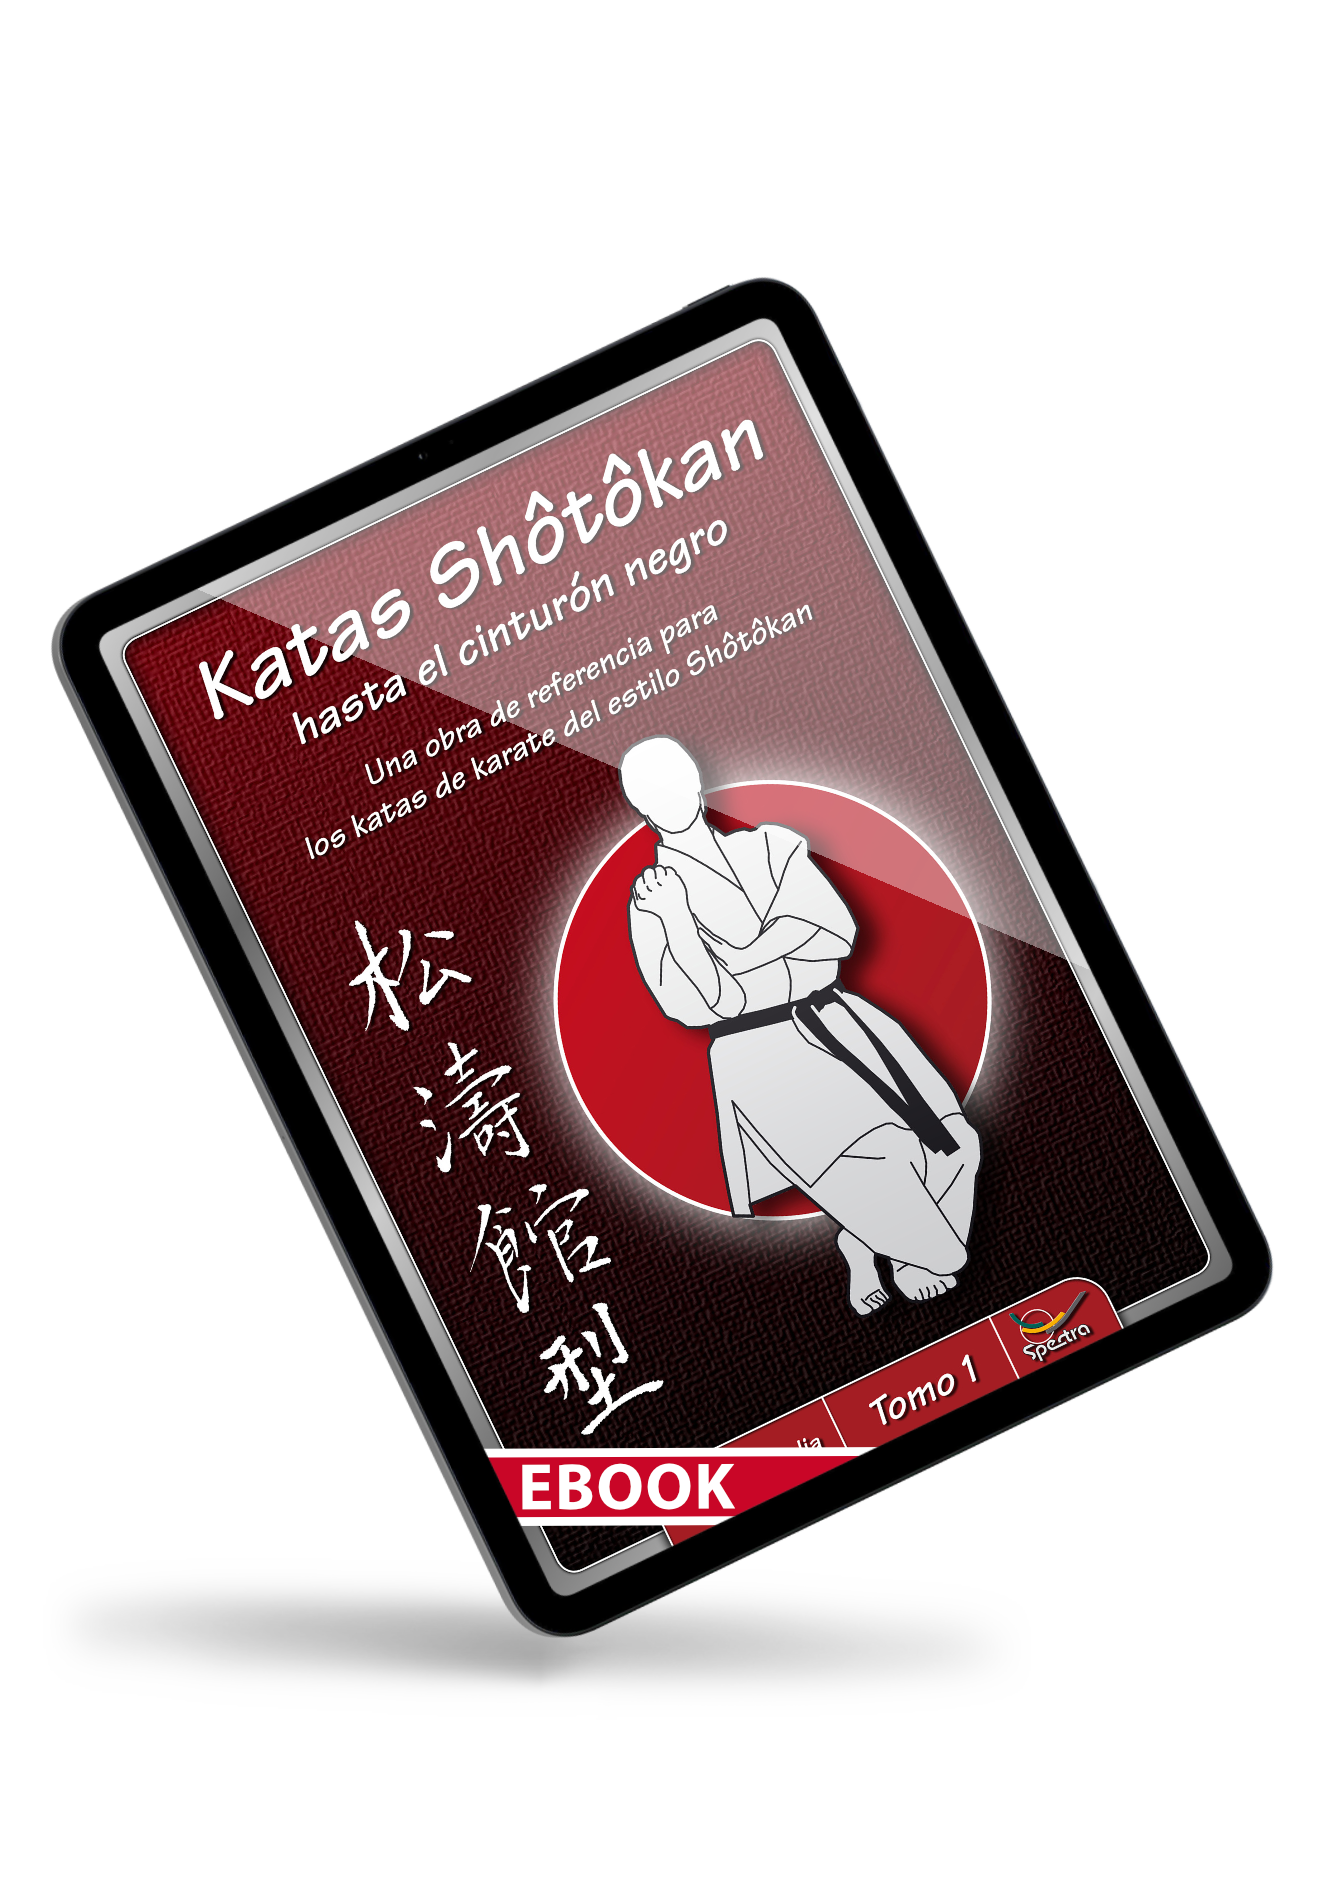 🇪🇸 eBook | Shōtōkan-Kata up to black belt | Volume 1